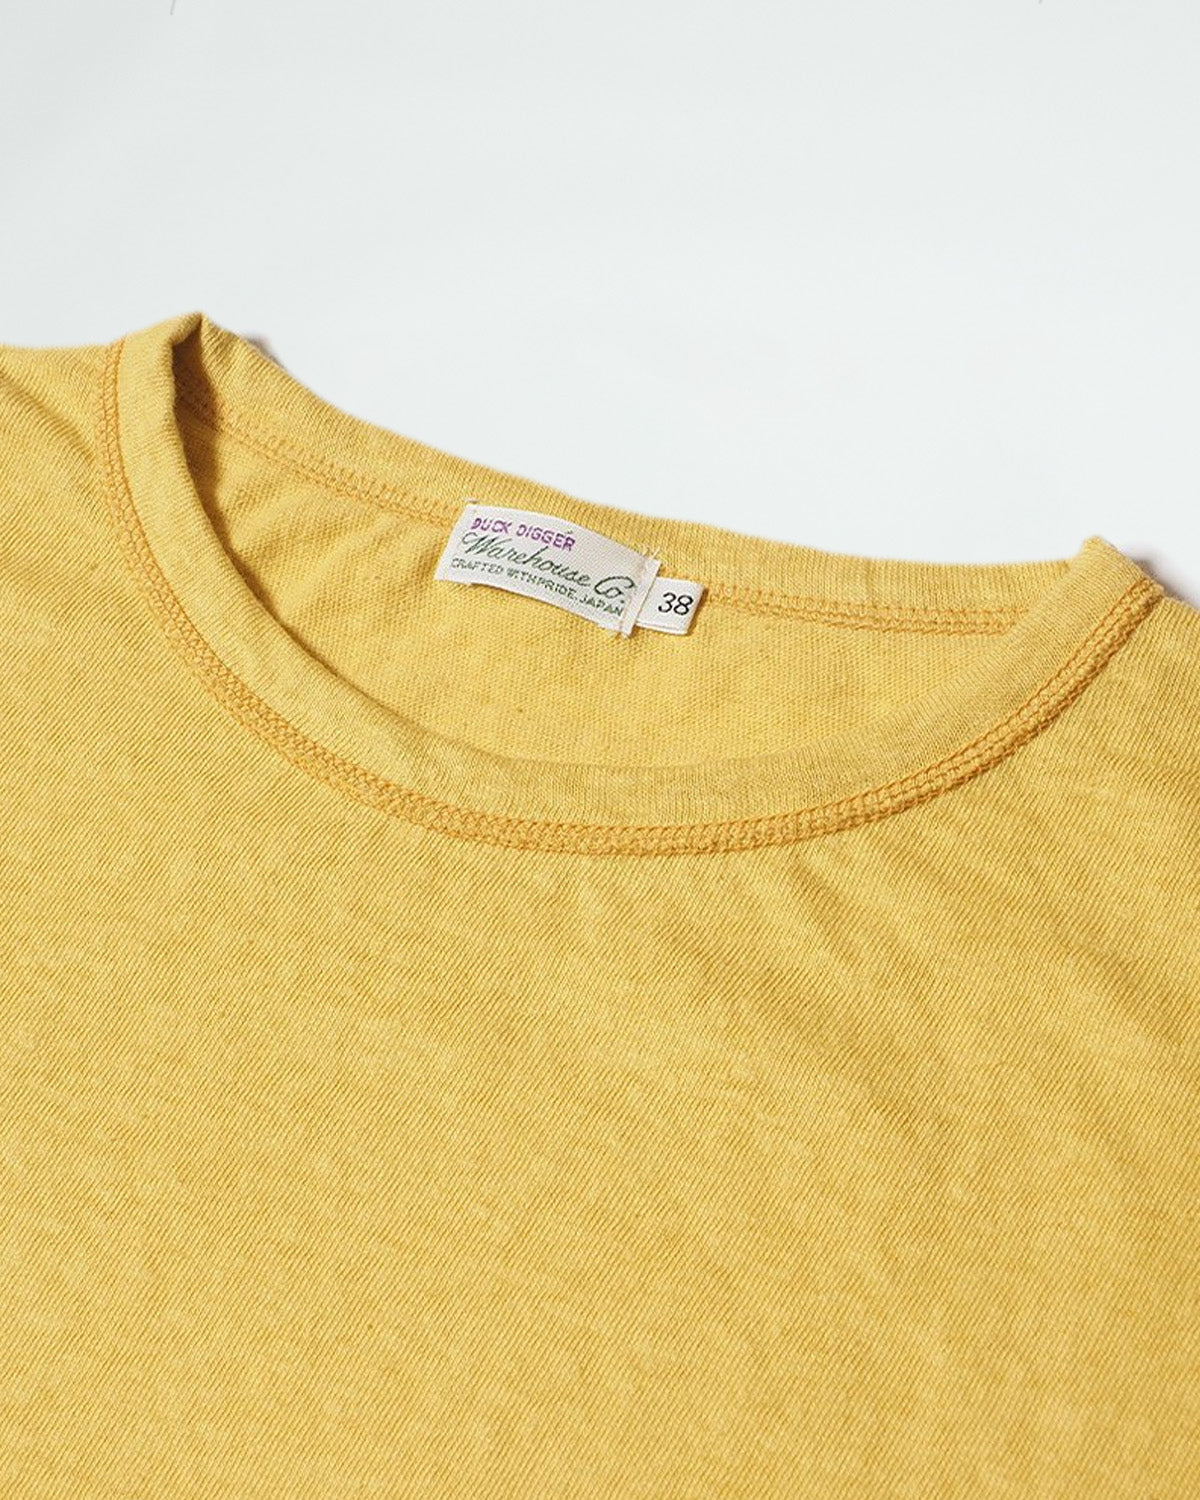 Lot 4091 - USN Skivvy Shirt - Yellow